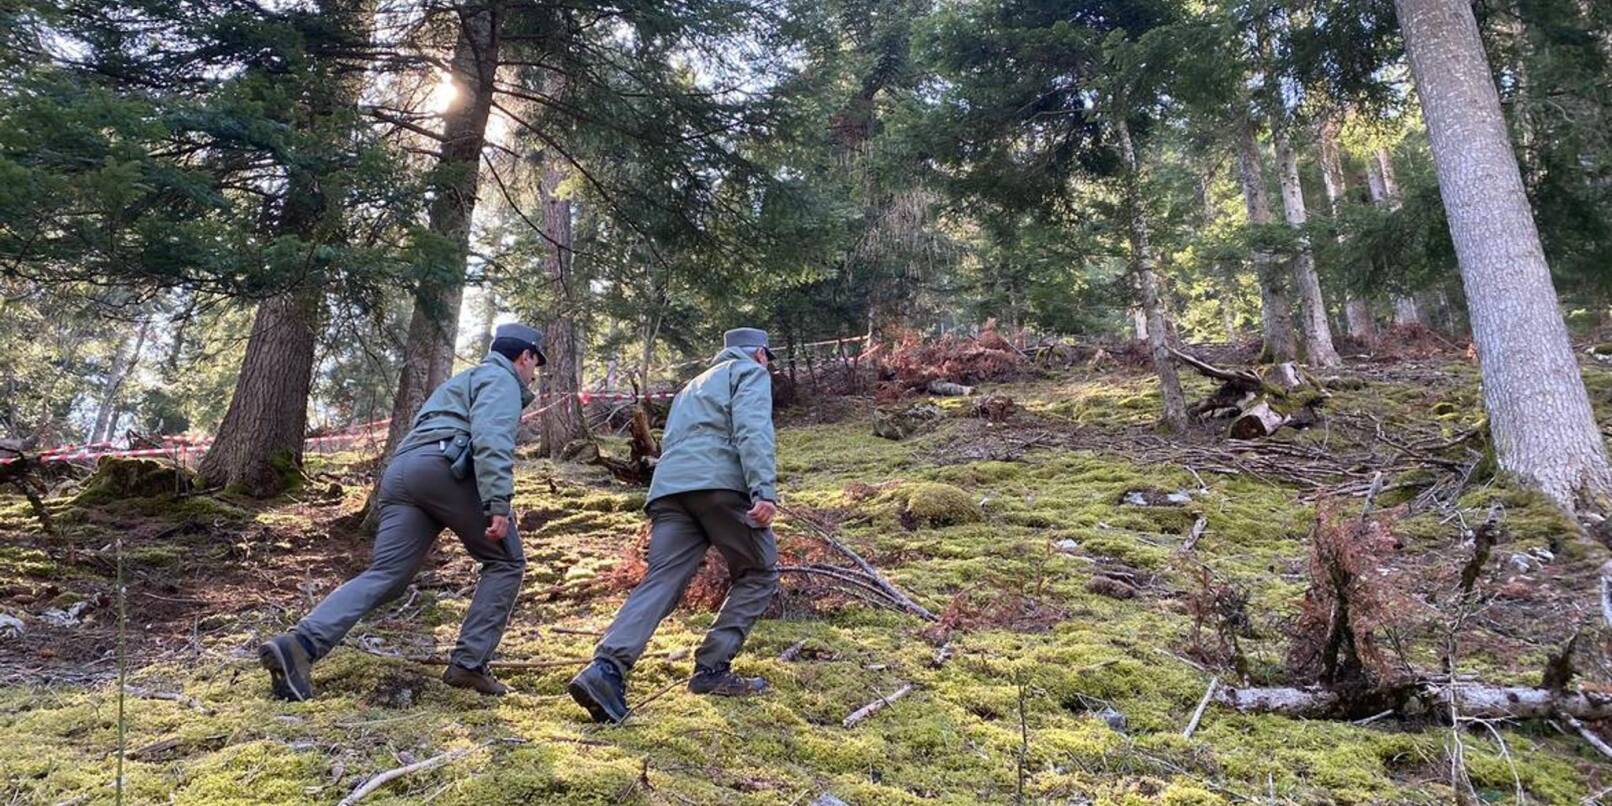 Polizeibeamte im Wald im norditalienischen Caldes, wo ein Jogger von einem Bären angegriffen und getötet worden ist.